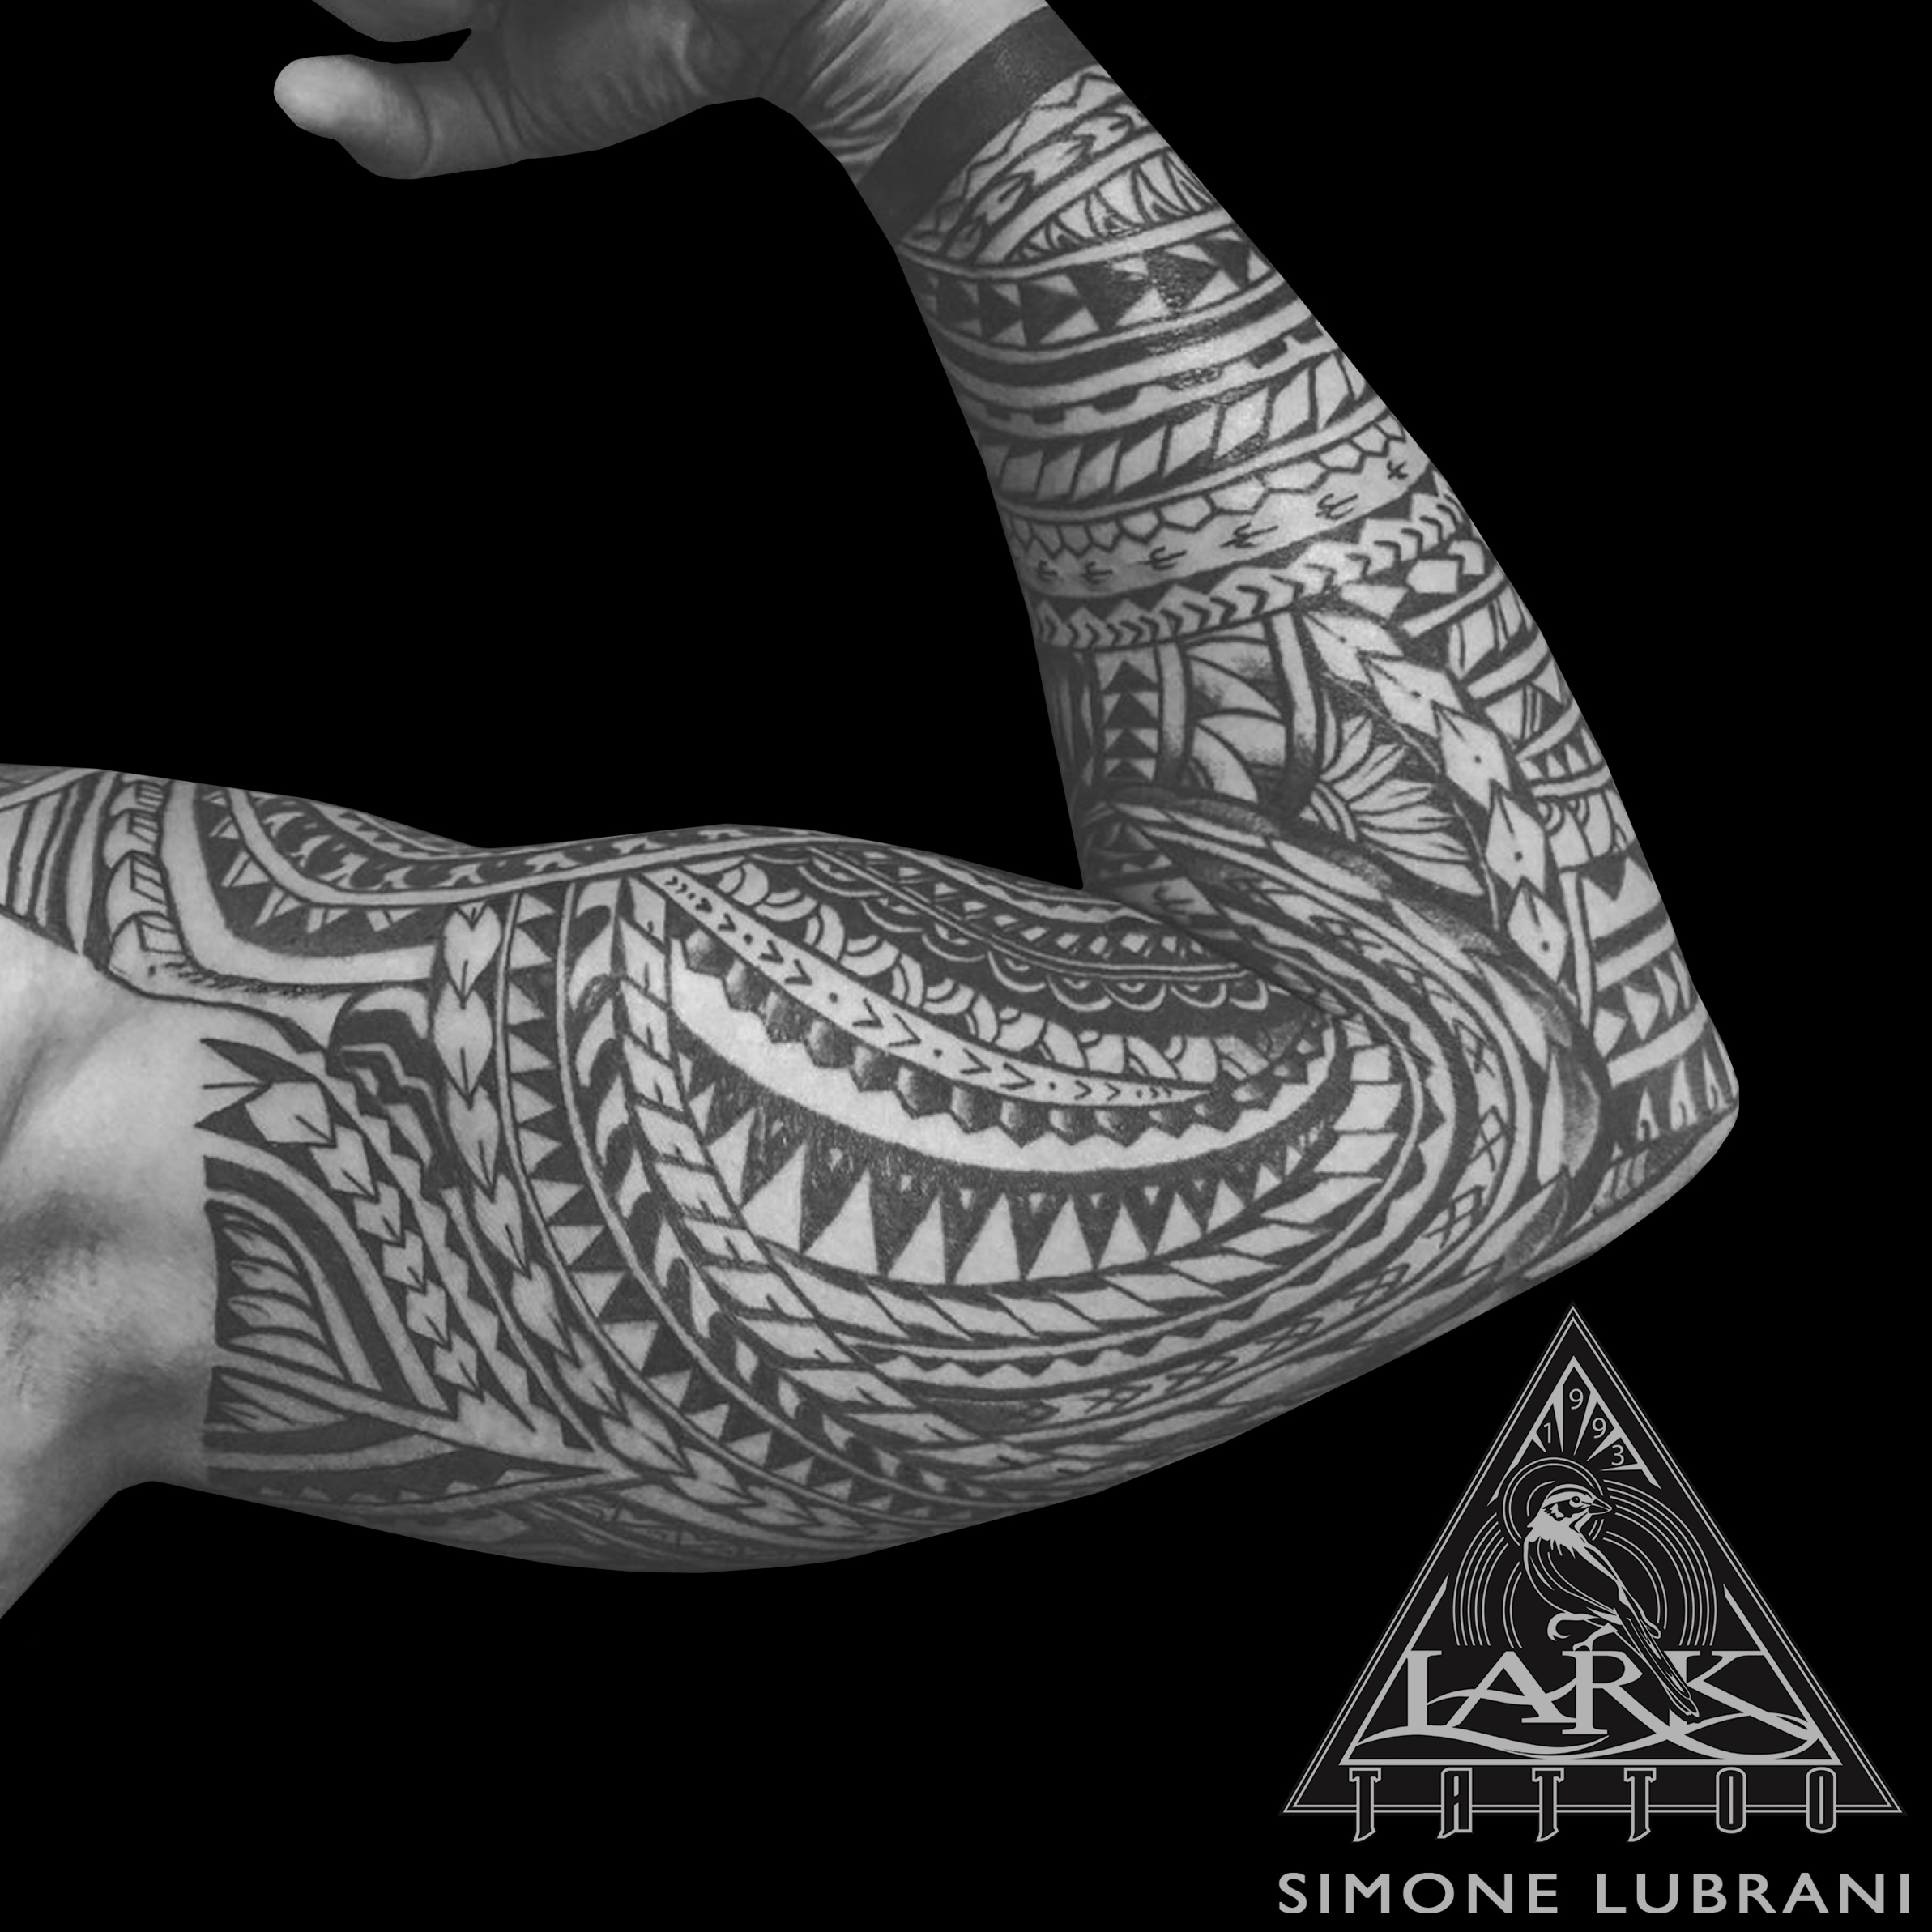 #LarkTattoo #Tattoo #SimoneLubrani #SimoneLubraniLarkTattoo #ArmTattoo #Polynesian #PolynesianTattoo #Tribal #TribalTattoo #TribalMaori #TribalMaoriTattoo #Polynesian #PolynesianTattoo #Samoan #SamoanTattoo #BlackInk #BlackTattoo #BlackInkTattoo #Maori #MaoriTattoo #Tattoos #TattooArtist #Tattoist #Tattooer #LongIslandTattooArtist #LongIslandTattooer #LongIslandTattoo #TattooOfTheDay #Tat #Tats #Tatts #Tatted #Inked #Ink #TattooInk #AmazingInk #AmazingTattoo #BodyArt #LarkTattooWestbury #Westbury #LongIsland #NY #NewYork #USA #Art #Tattedup #InkedUp #LarkTattoos